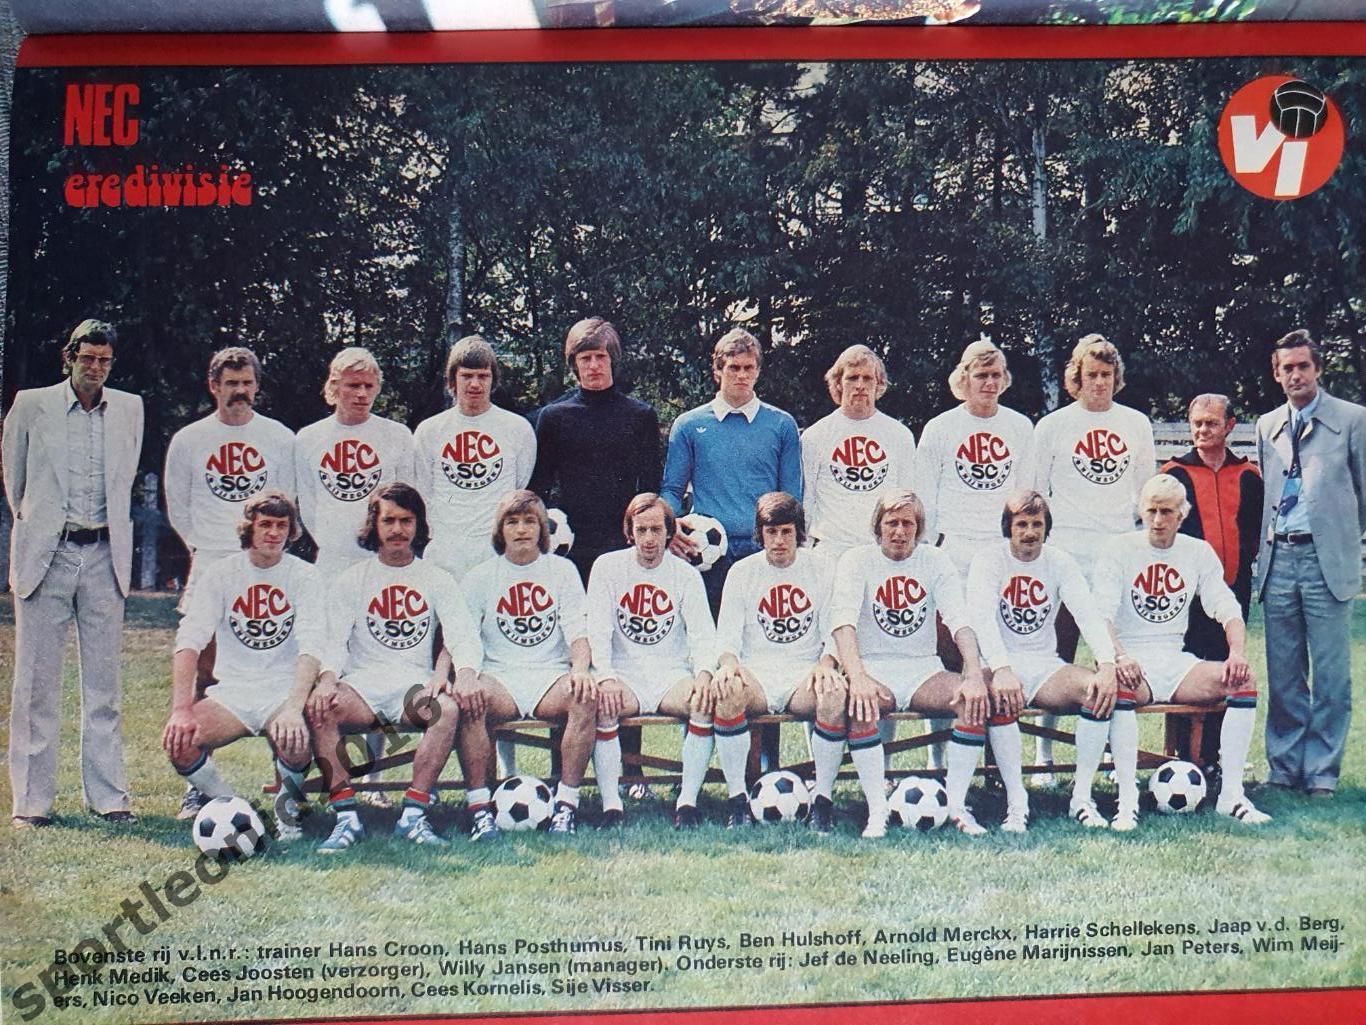 Voetbal International 1977 51 выпуск годовая подписка .2 3